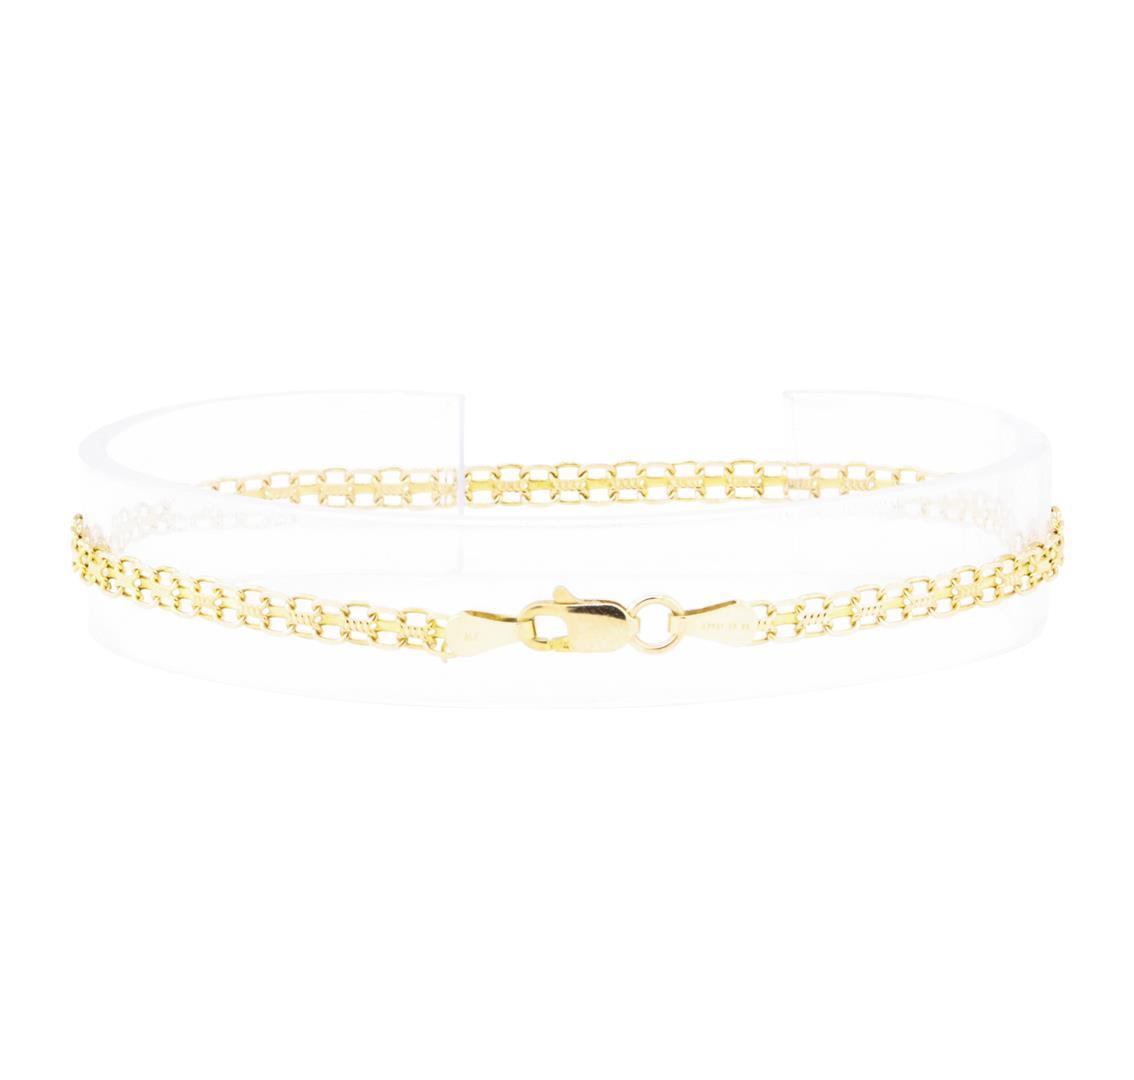 Bismark Chain Bracelet - 14KT Yellow Gold